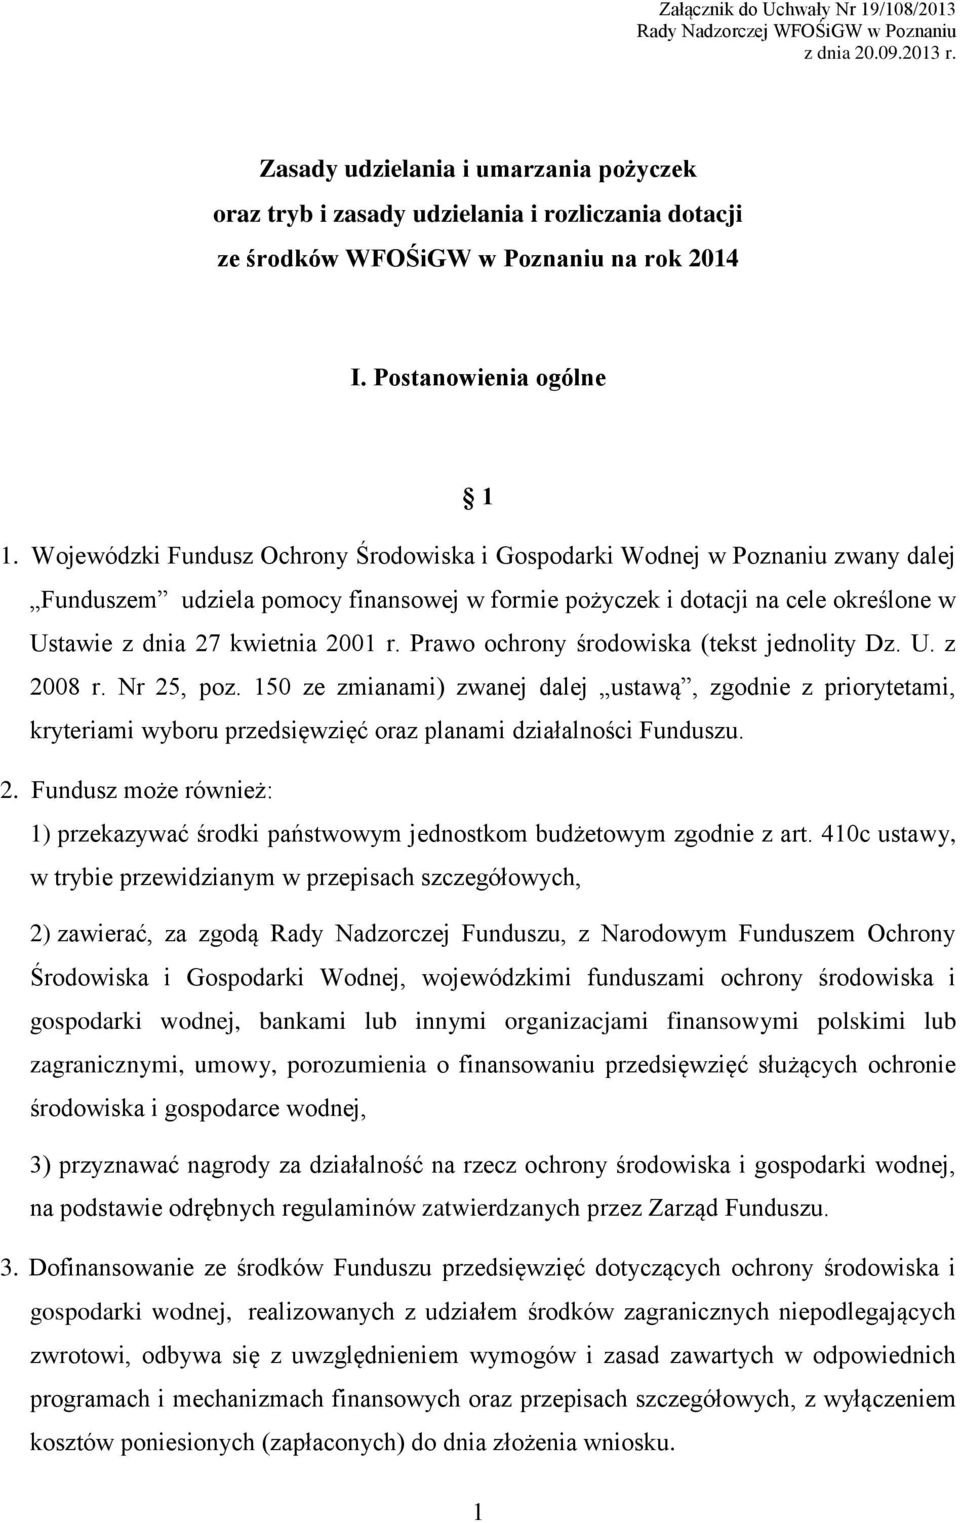 Wojewódzki Fundusz Ochrony Środowiska i Gospodarki Wodnej w Poznaniu zwany dalej Funduszem udziela pomocy finansowej w formie pożyczek i dotacji na cele określone w Ustawie z dnia 27 kwietnia 2001 r.